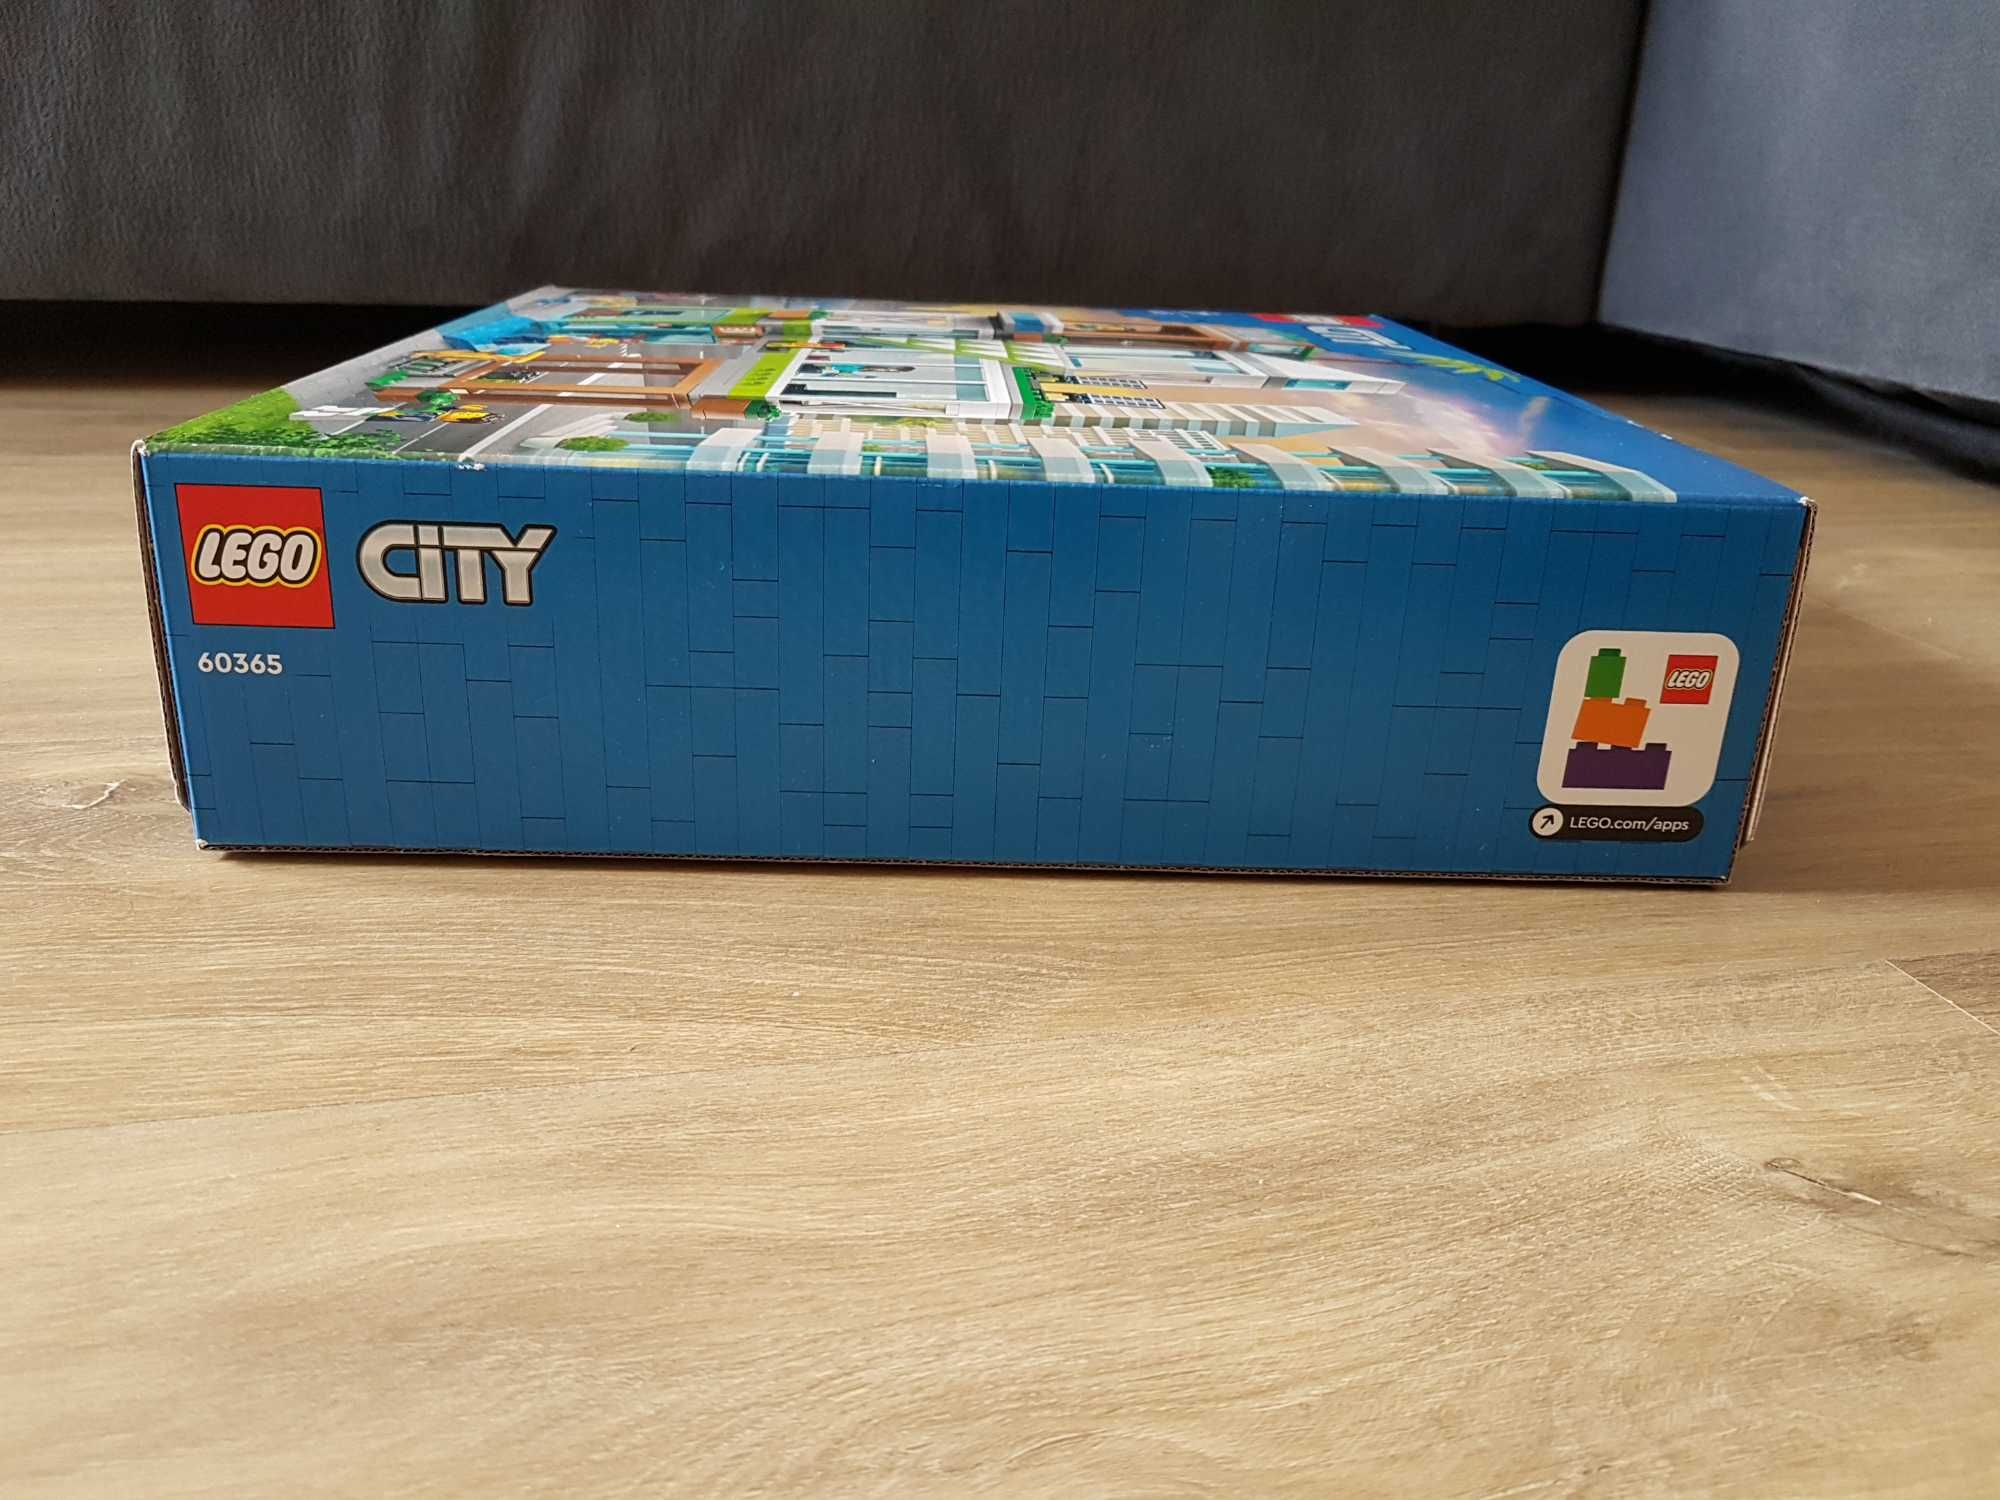 NOWE klocki LEGO CITY 60365 Apartamentowiec wiek 6+